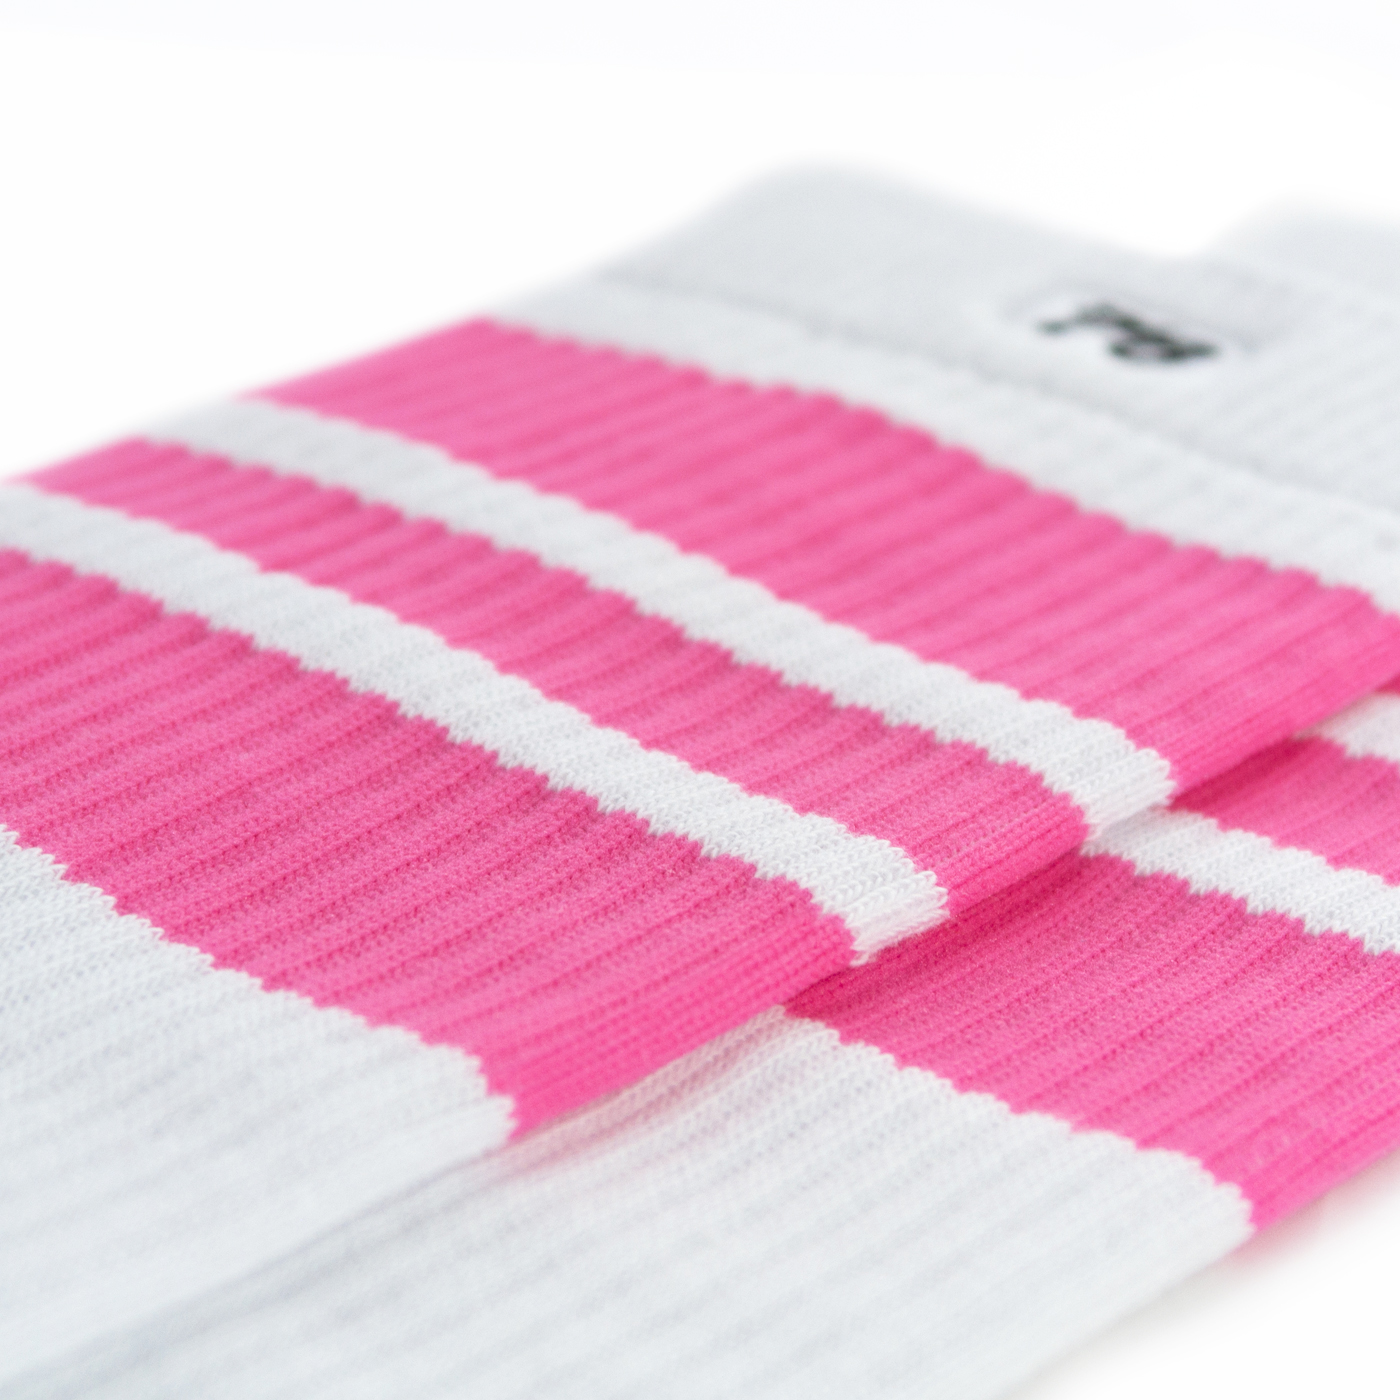 So76 the pink Pinks on white Skater-Socks Hi